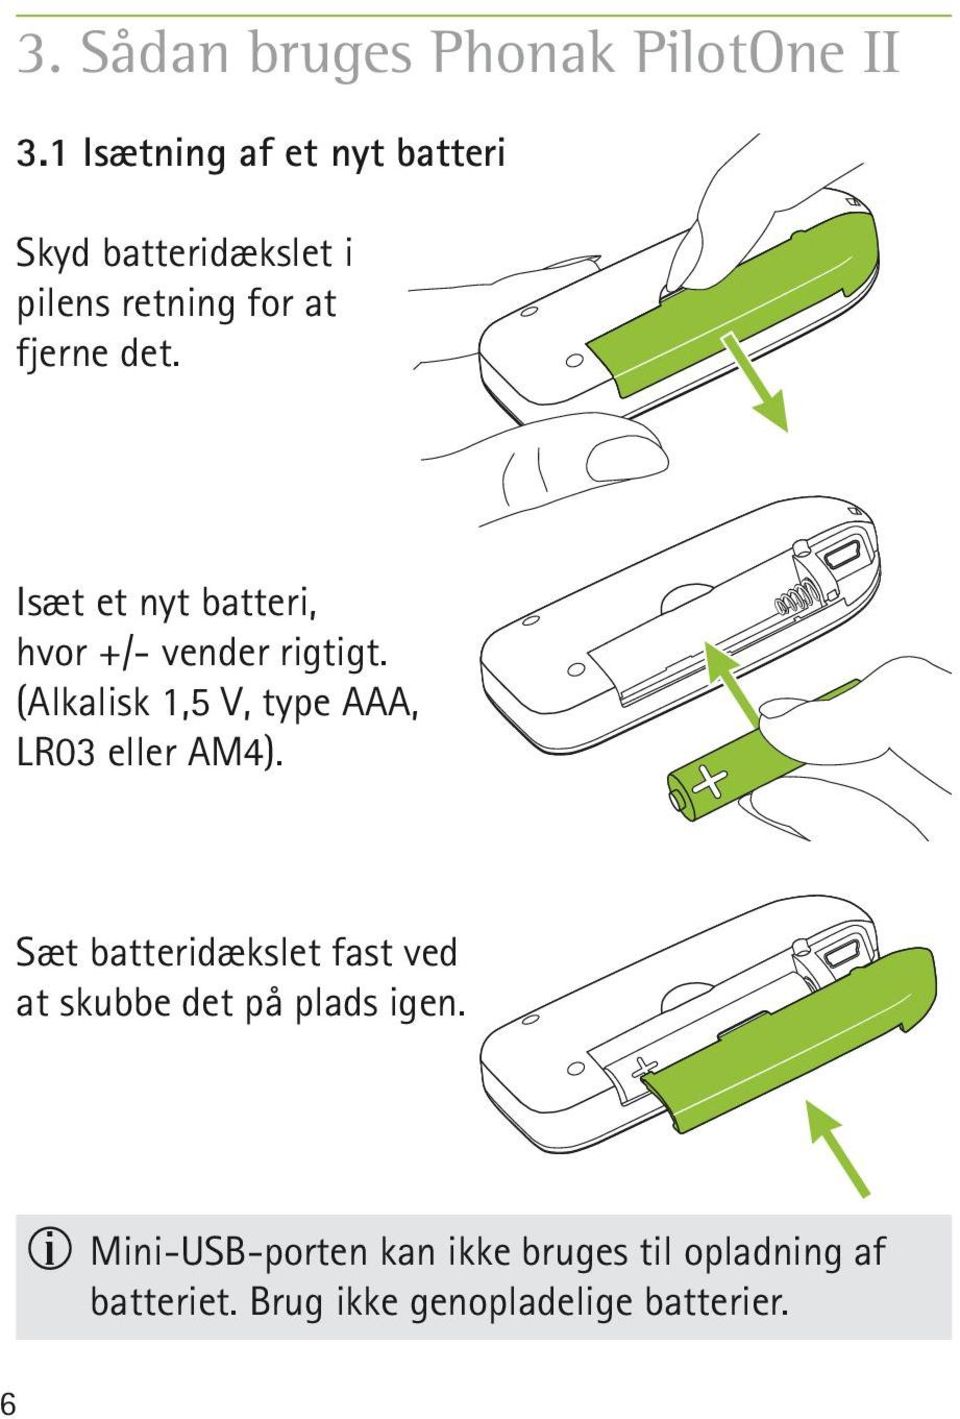 Isæt et nyt batteri, hvor +/- vender rigtigt. (Alkalisk 1,5 V, type AAA, LR03 eller AM4).